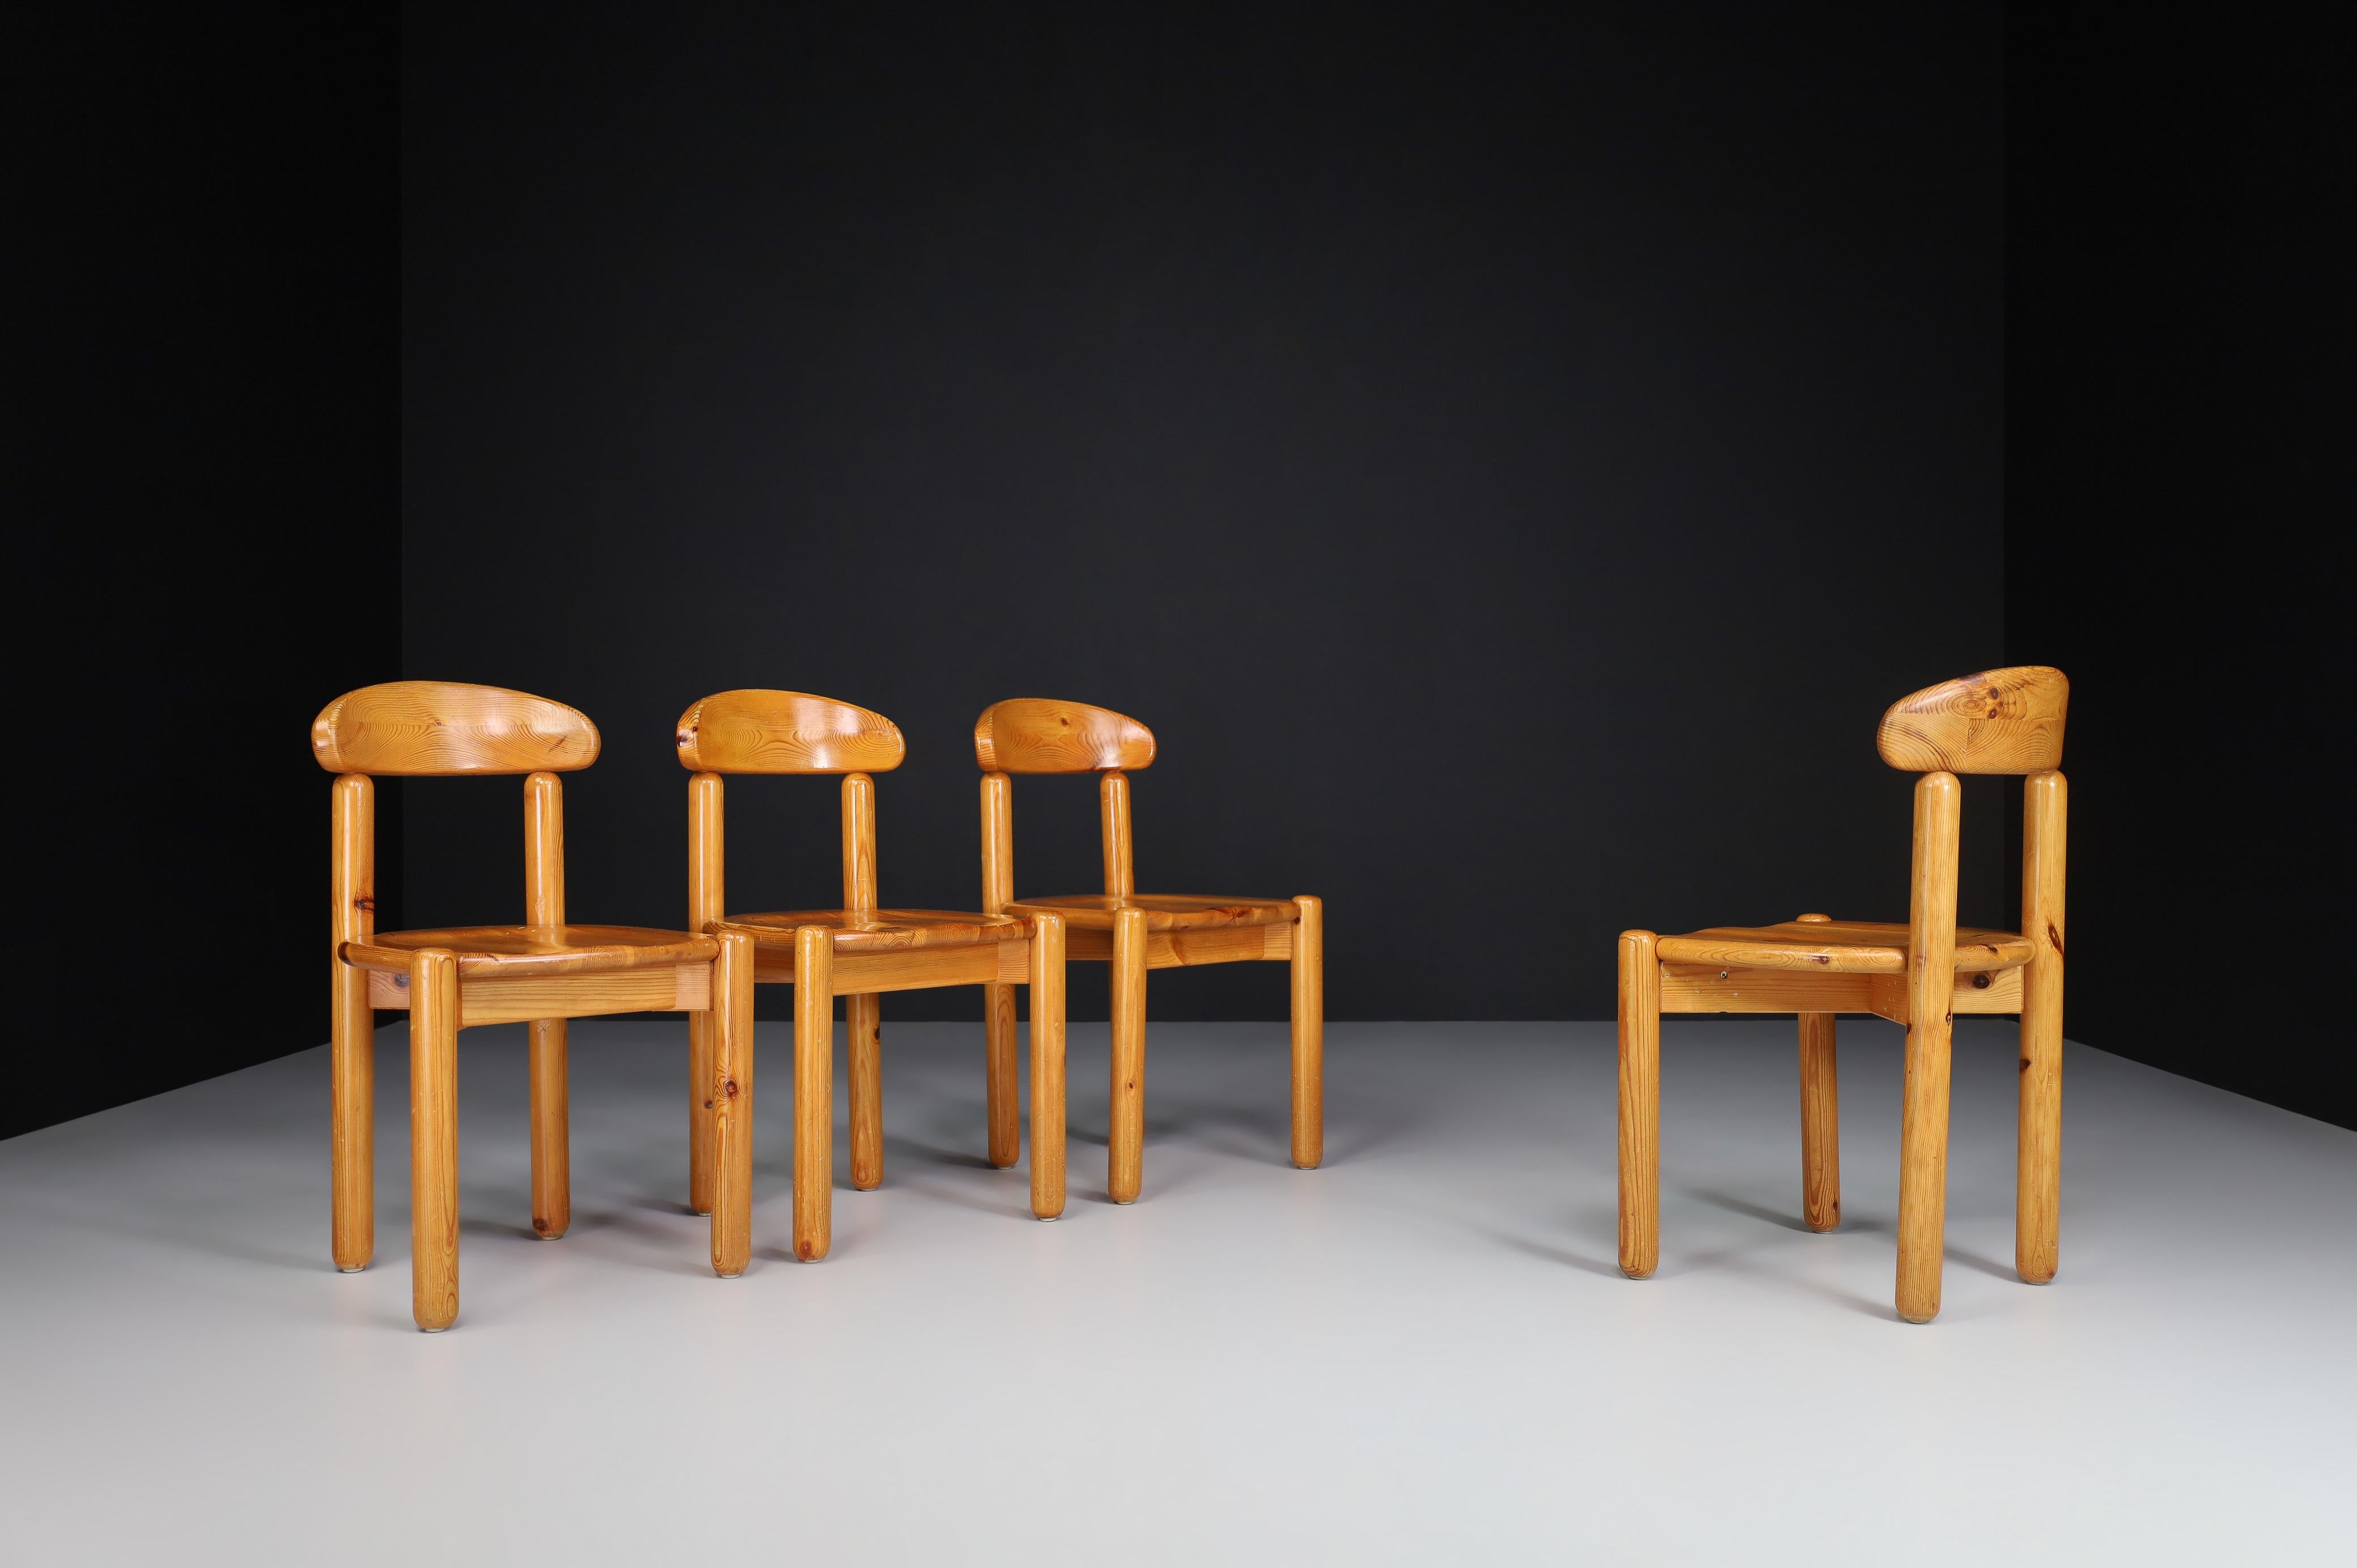 Ensemble de quatre chaises de salle à manger Rainer Daumiller en pin massif, années 1970, Danemark.

Ensemble de quatre chaises de salle à manger Rainer Daumiller en pin massif, années 1970 Danemark. Joli ensemble de fauteuils organiques et